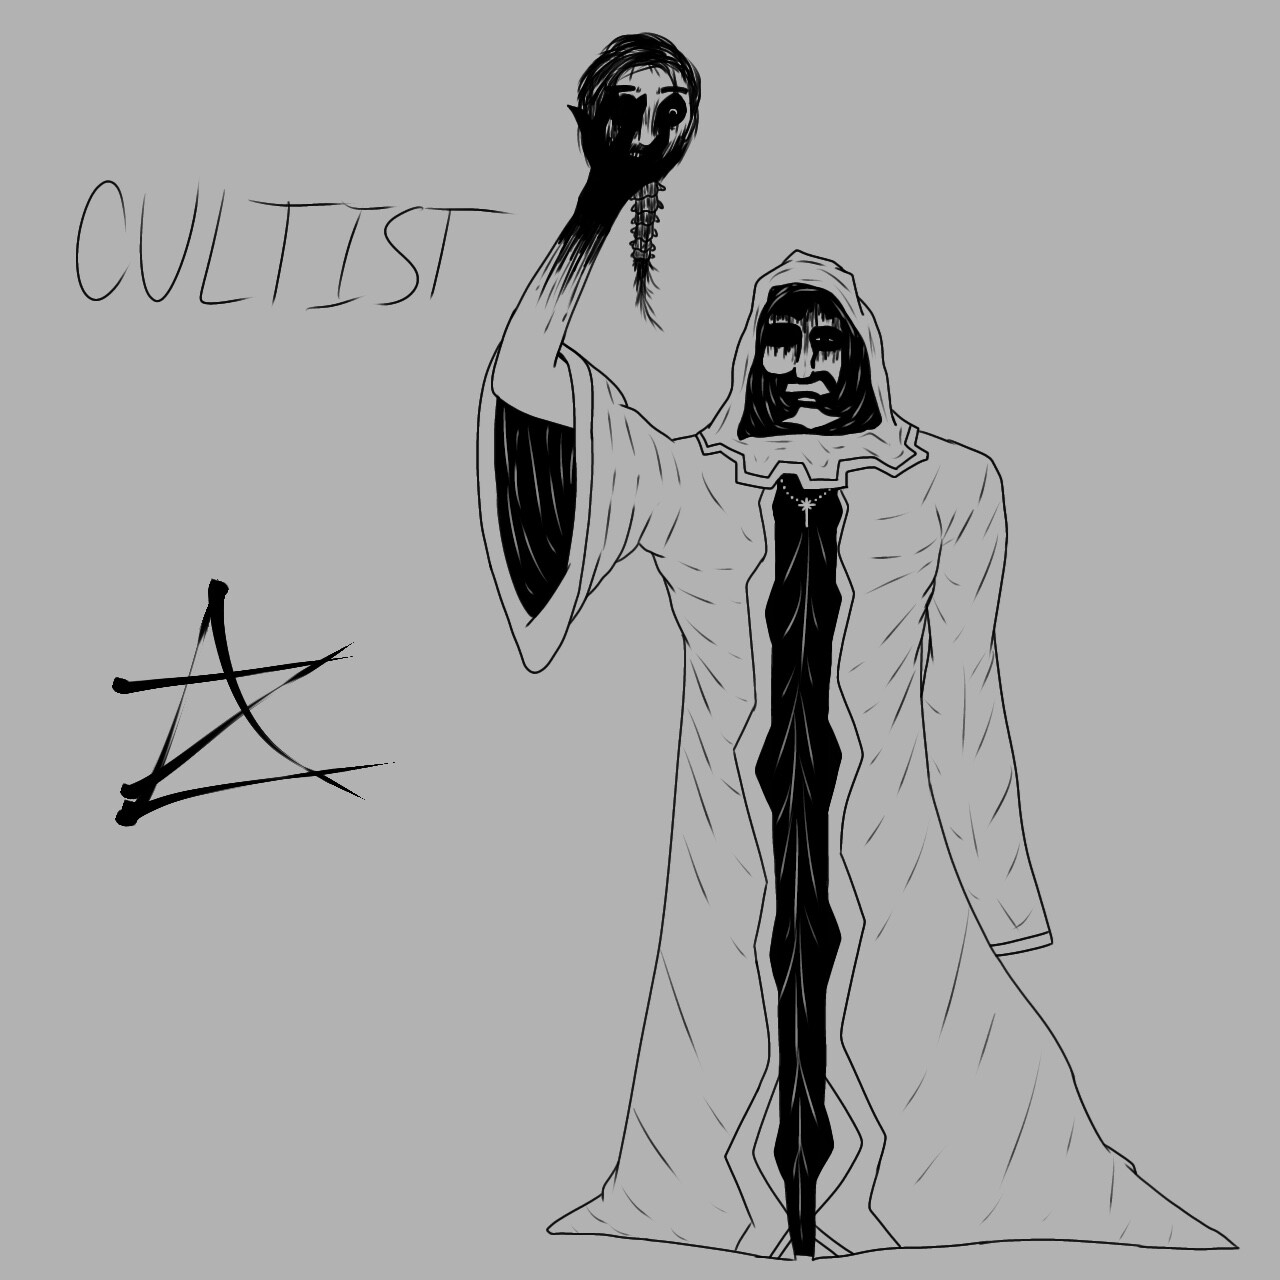 ArtStation - Cultist